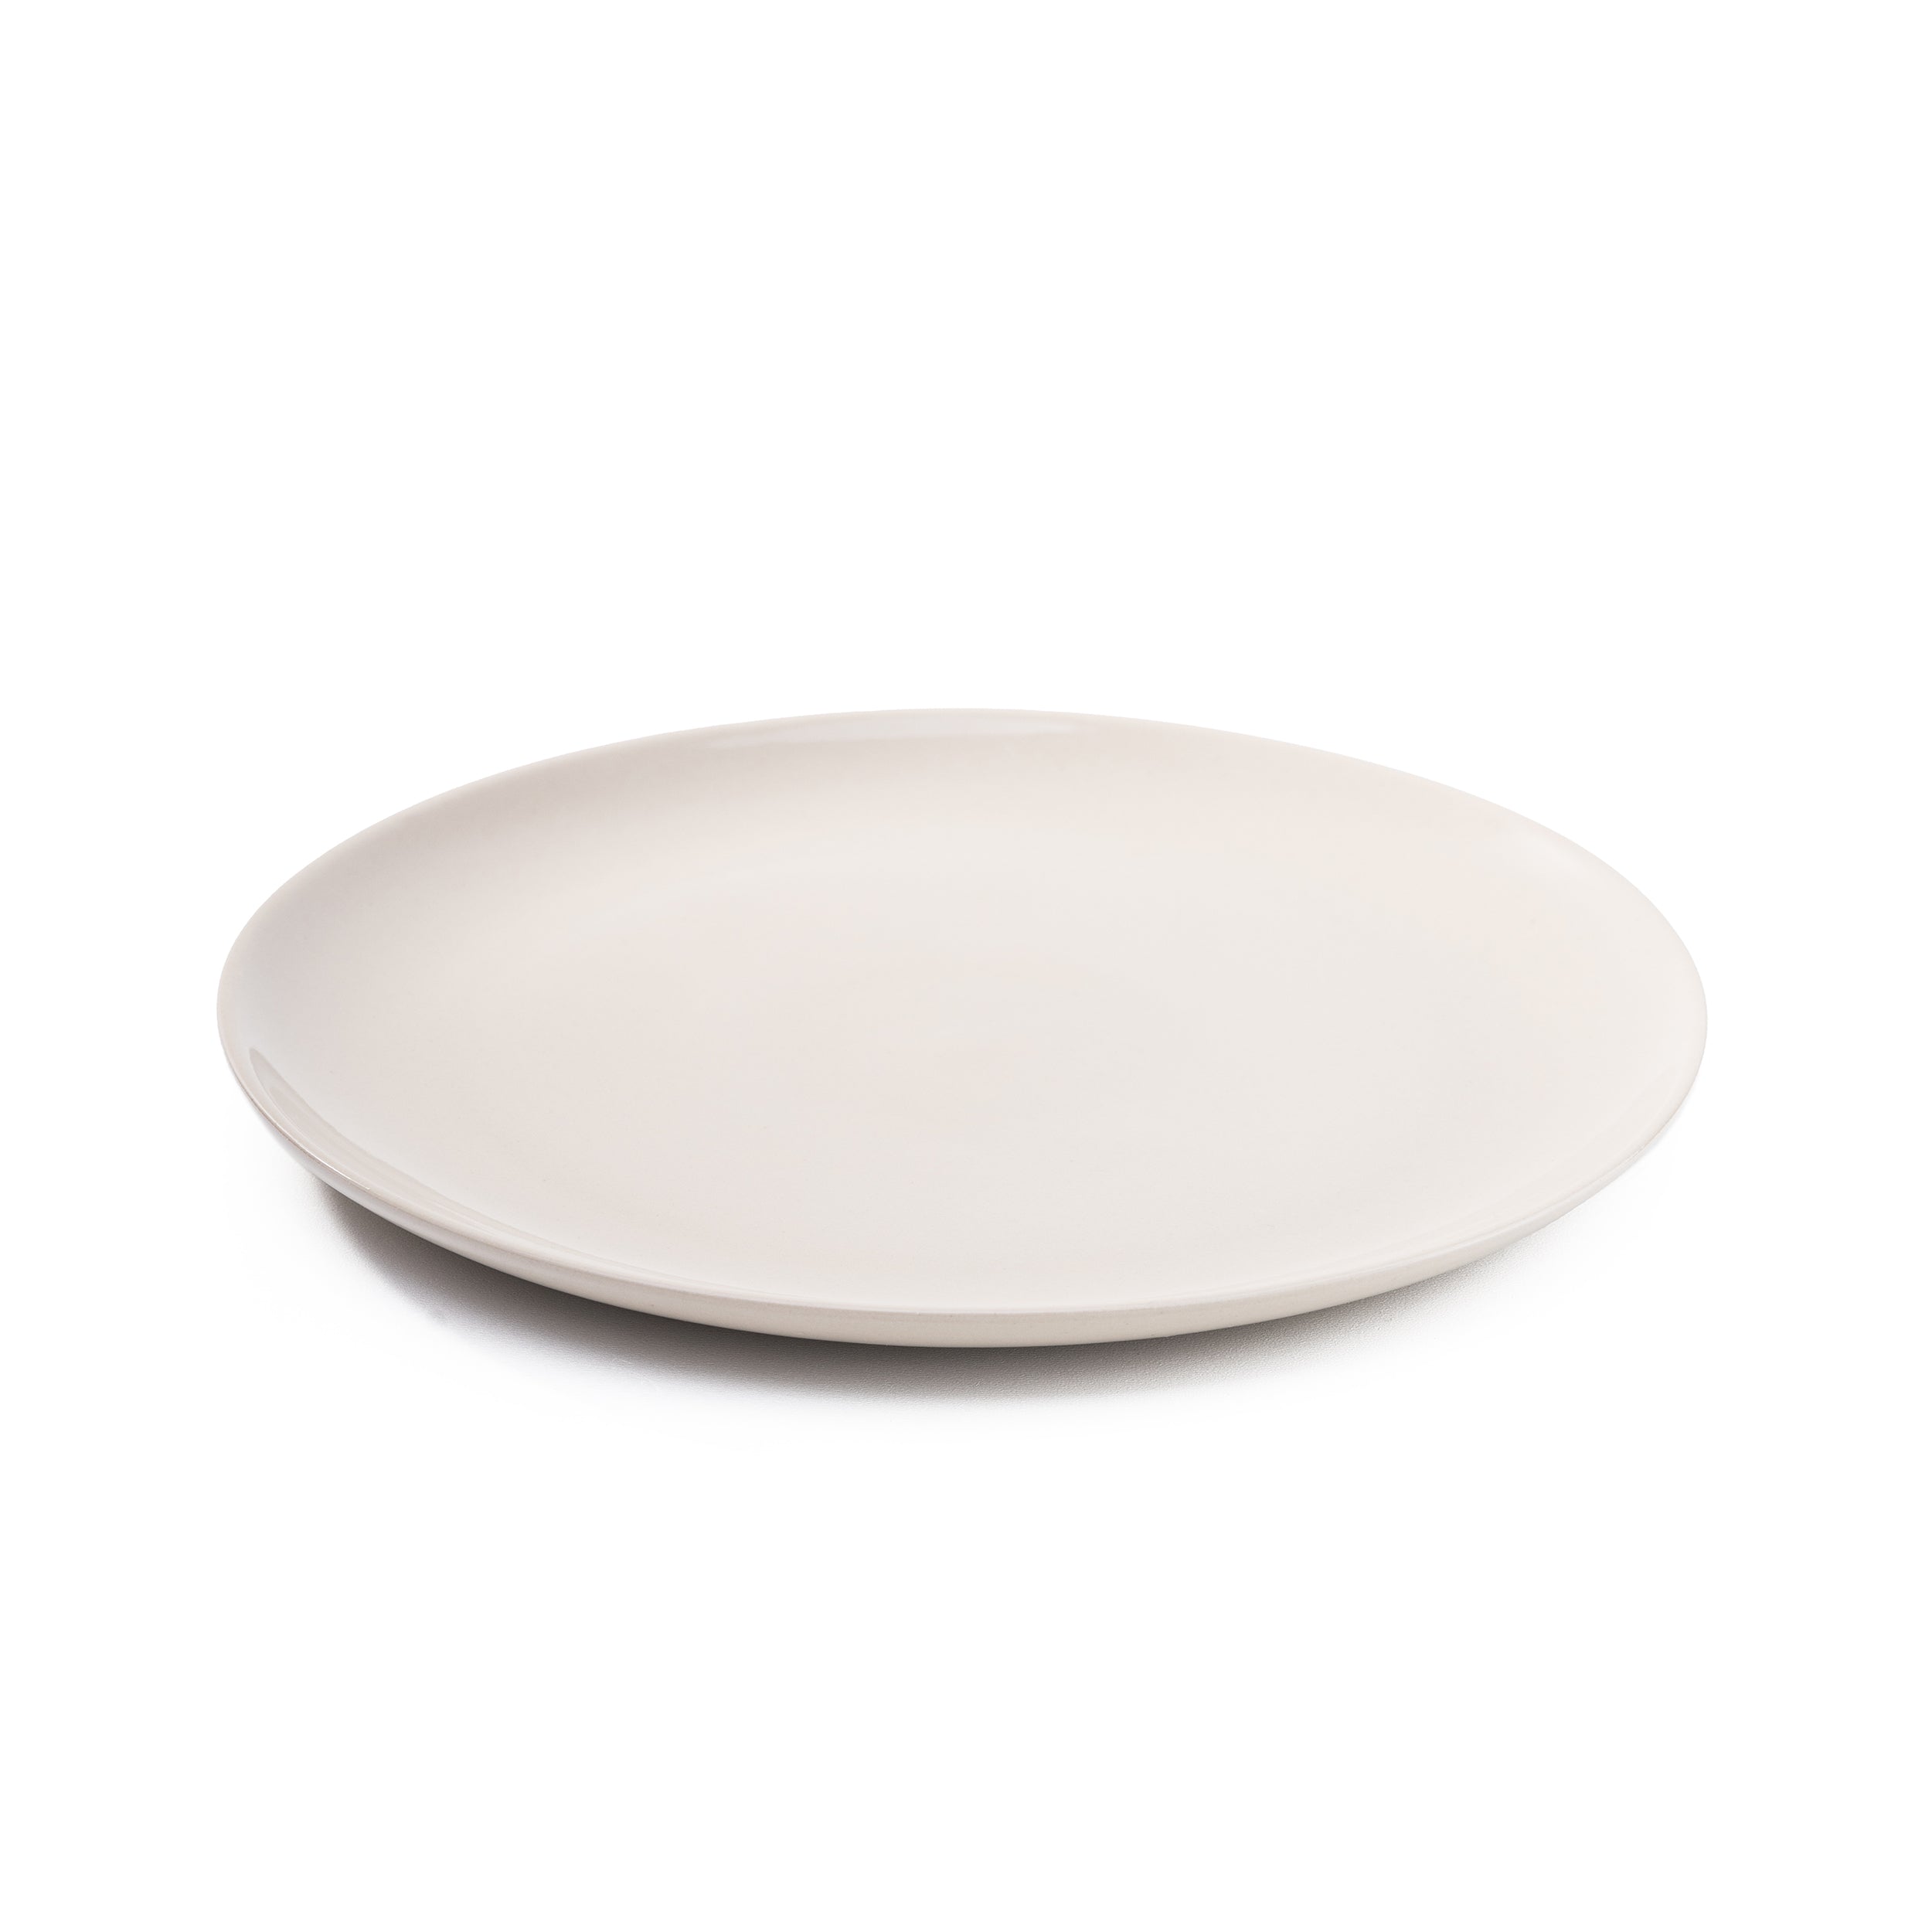 Herring & Bones - Concept Store Joyeux - La Manufacture de Digoin - Assiettes - Assiette plate en grès